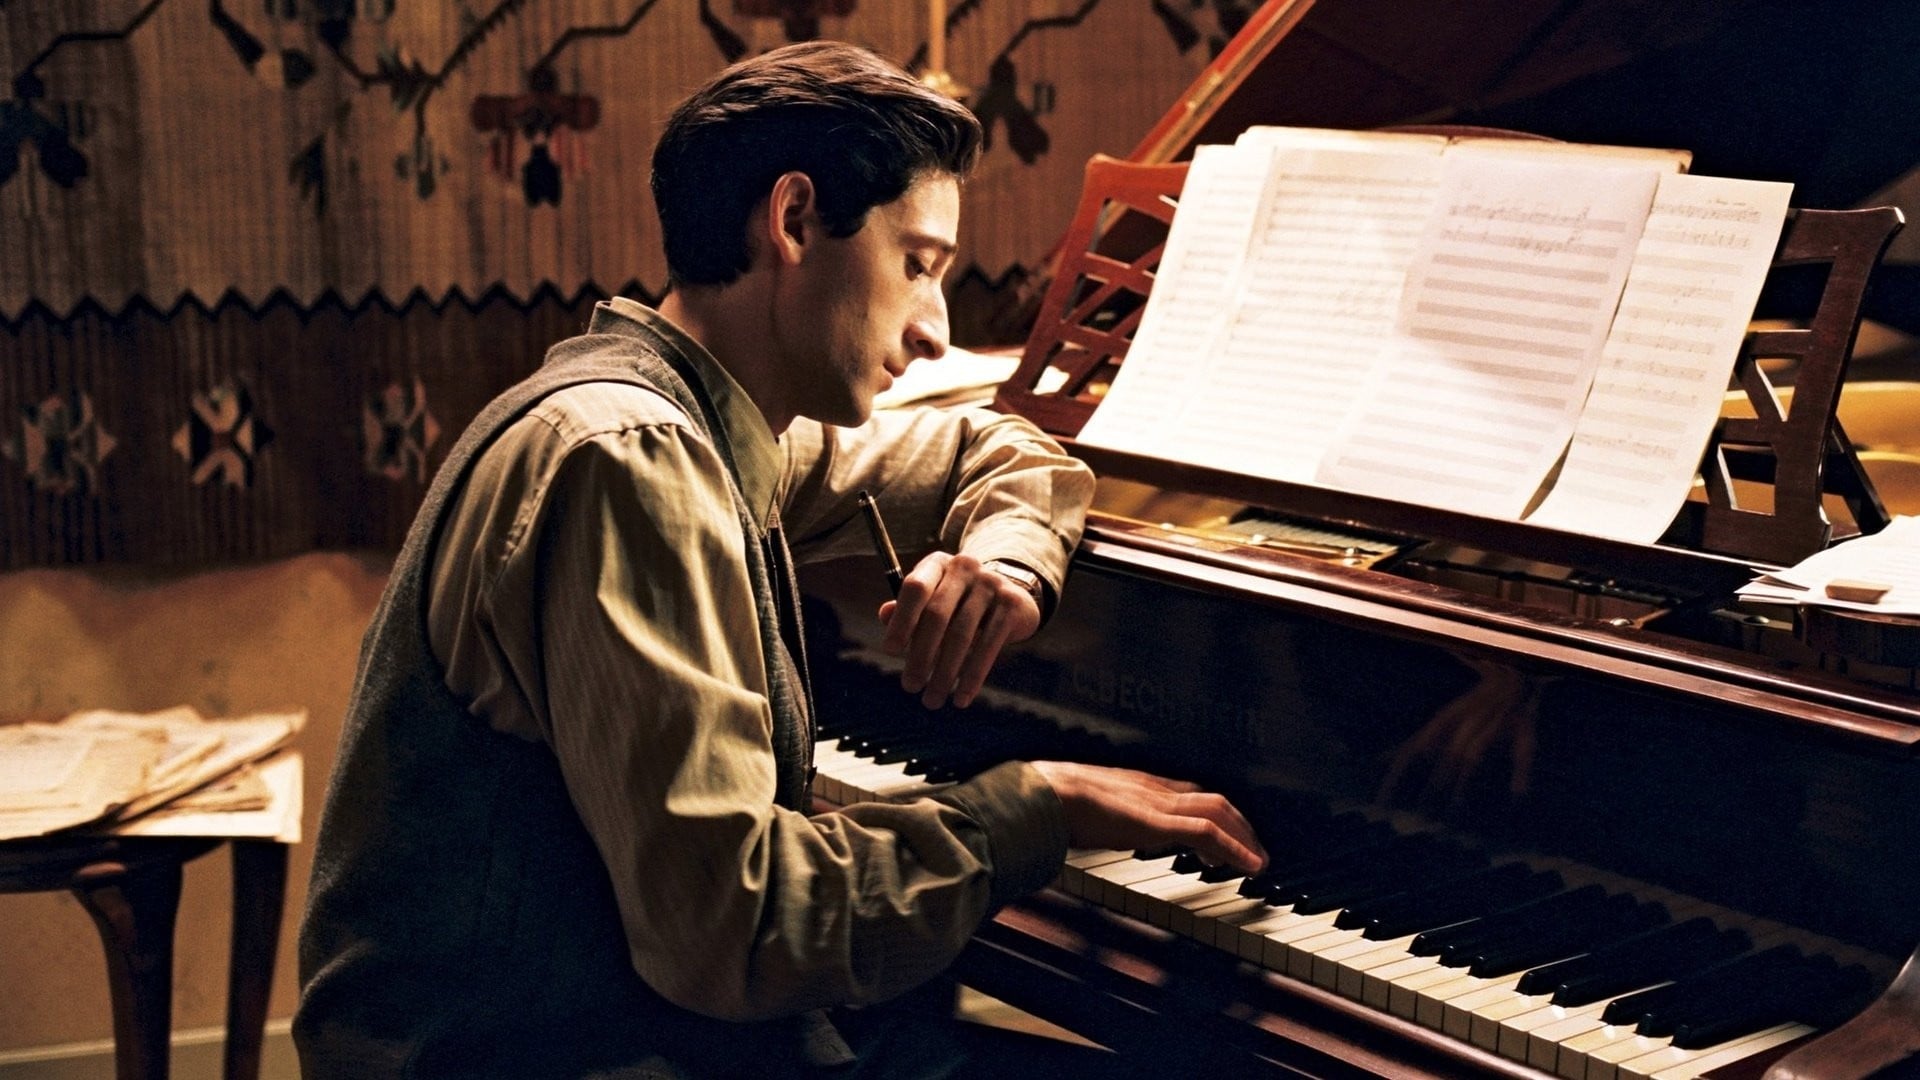 Nghệ sĩ dương cầm - The pianist